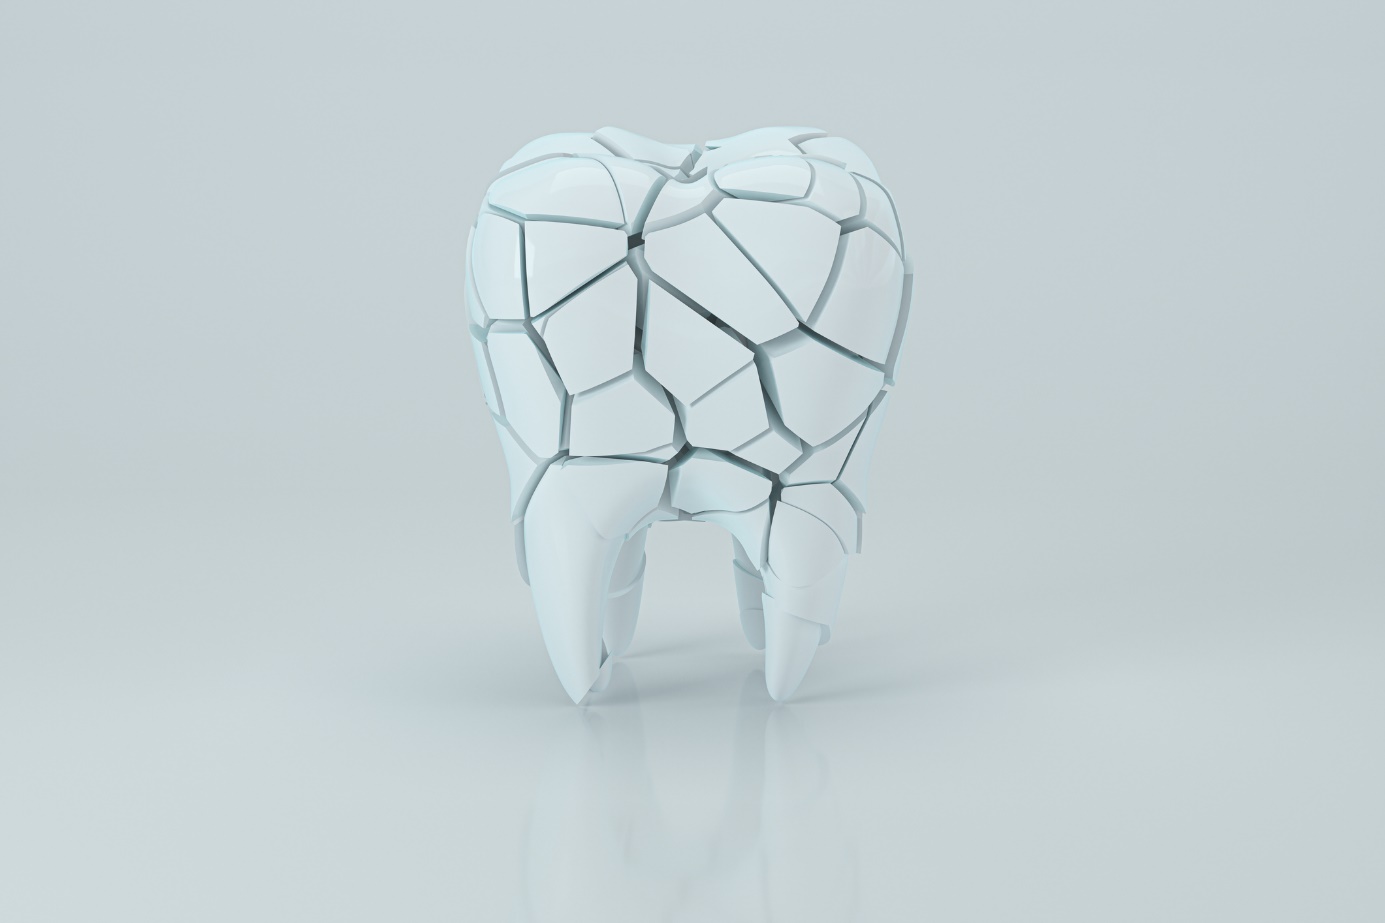 Zub a znázornění zubních kanálků - anatomické schematické znázornění